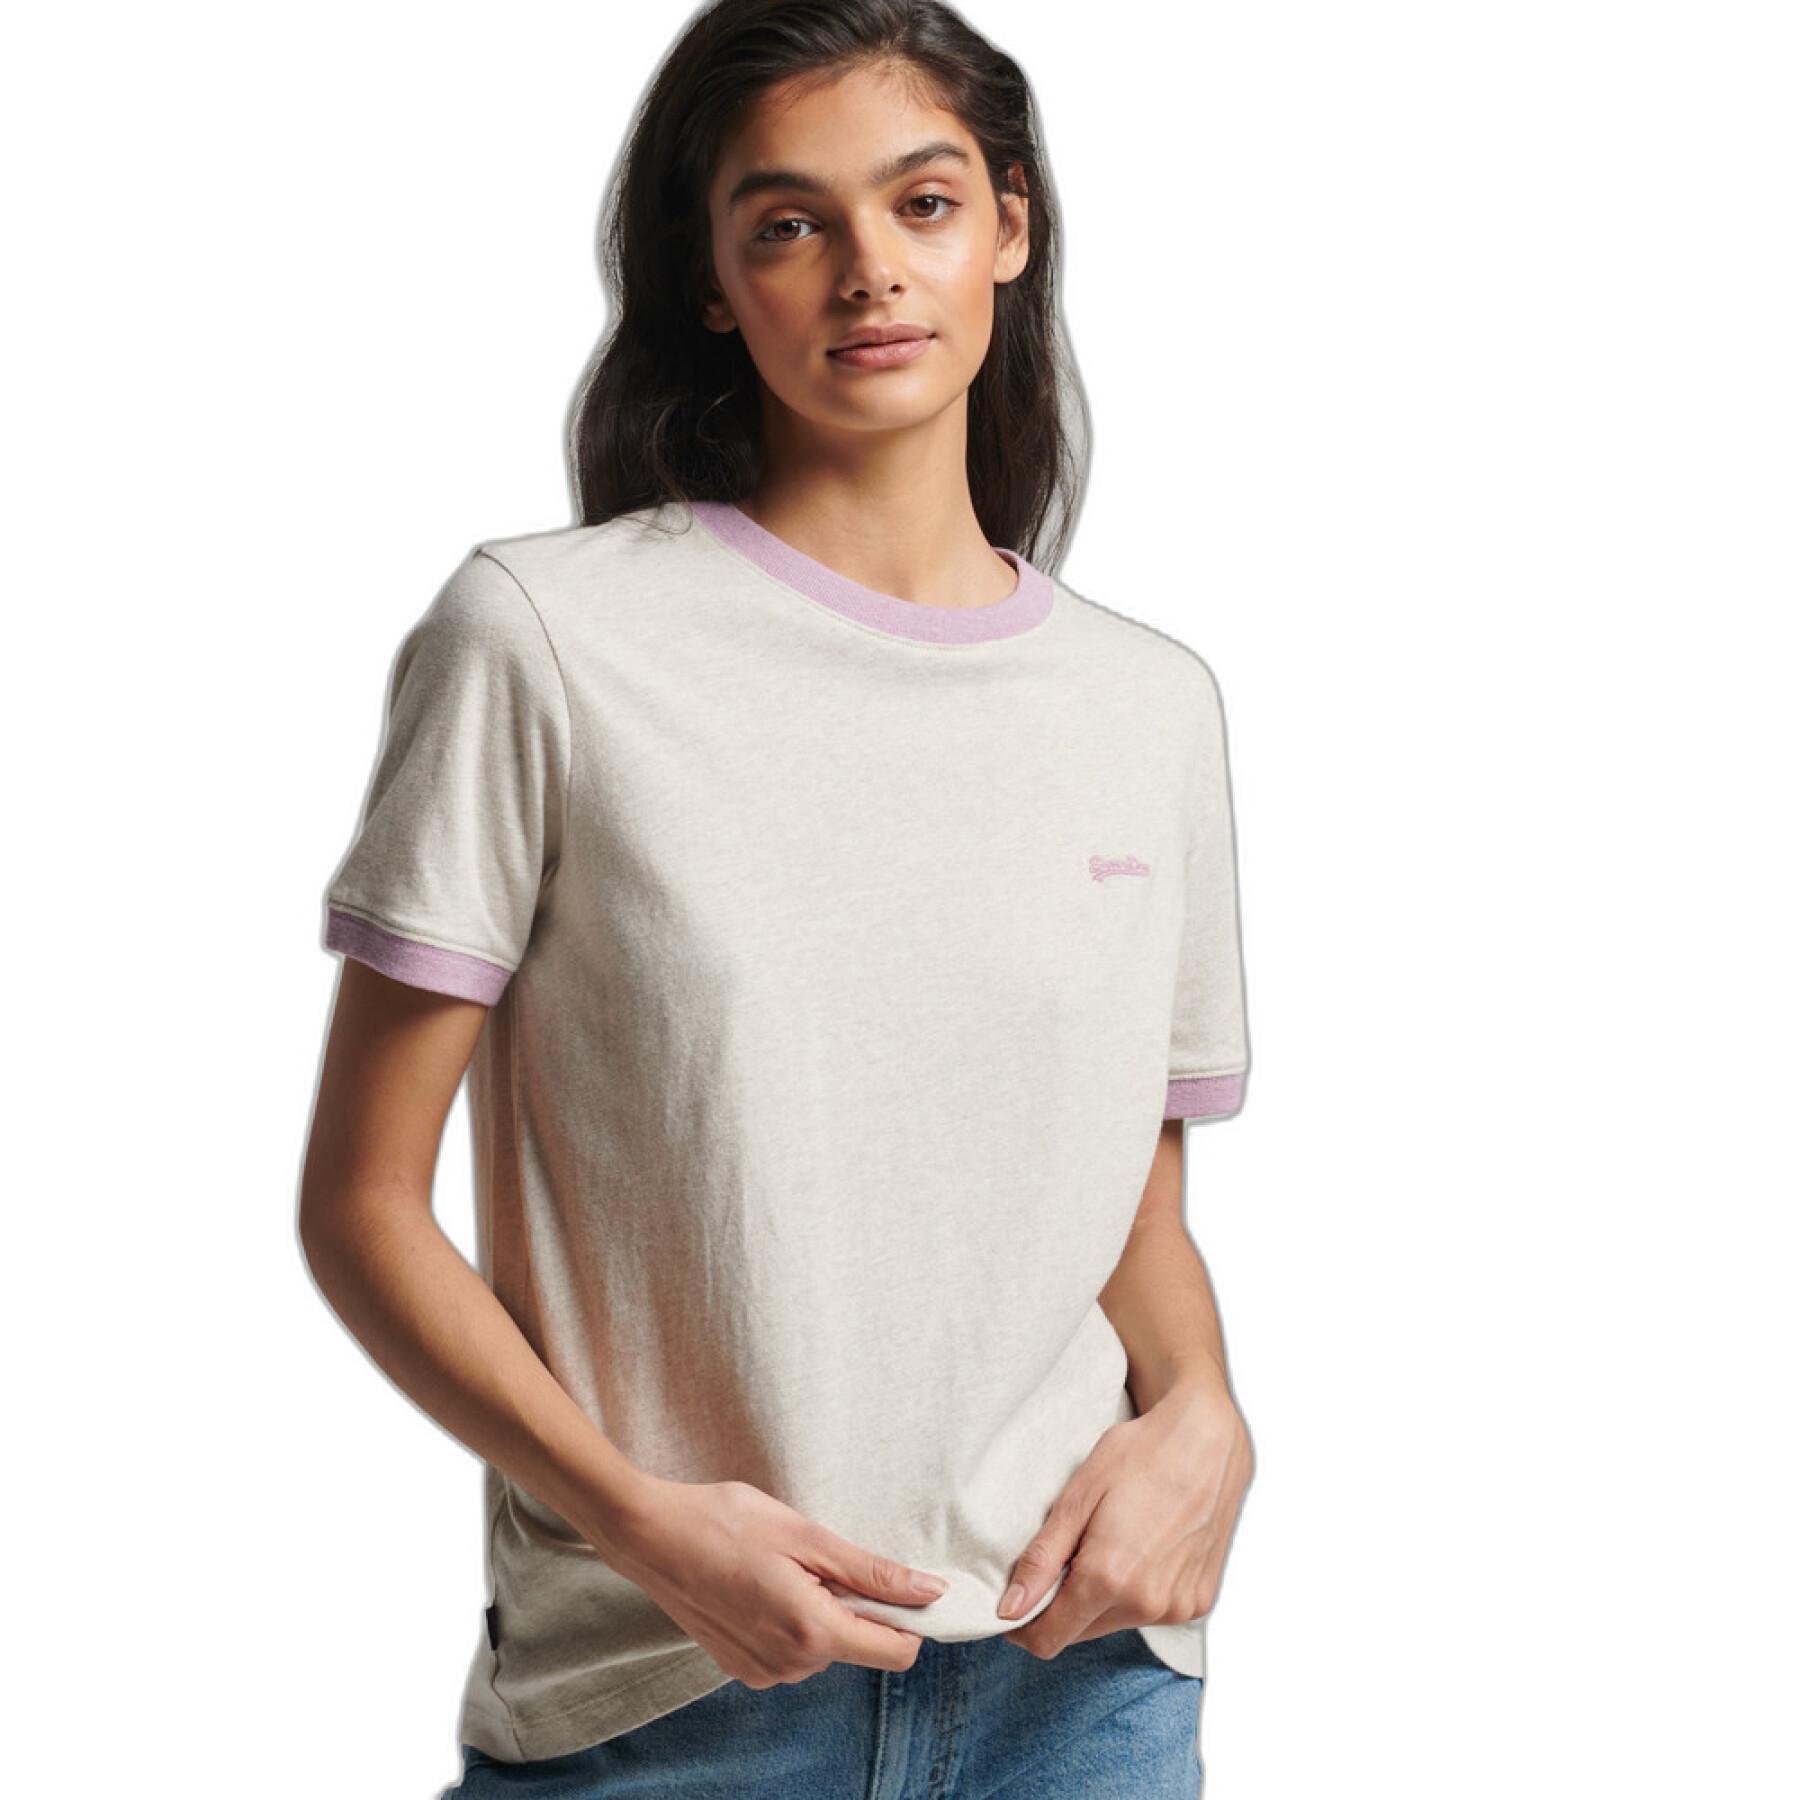 T-shirt contrasté coton bio fille Superdry Vintage Logo